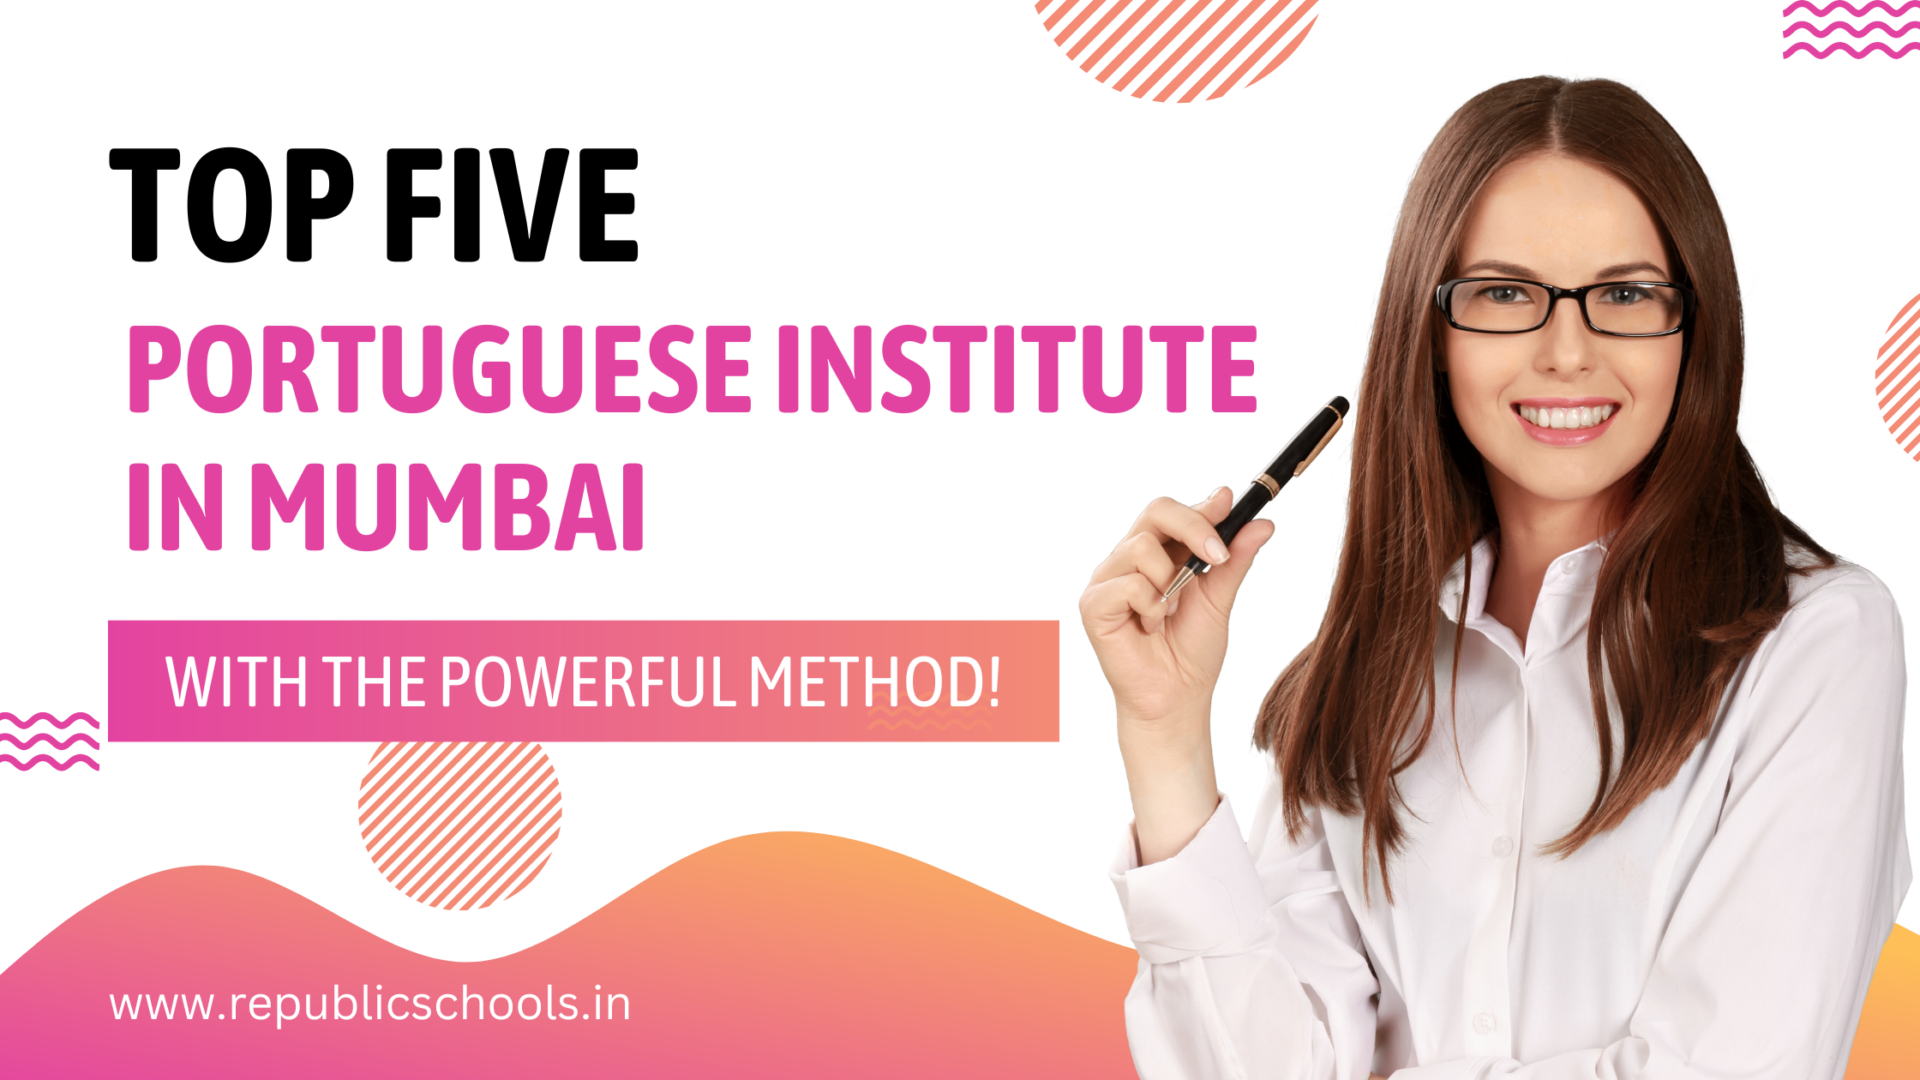 Top Five Portuguese Institutes In Mumbai To Learn Portuguese